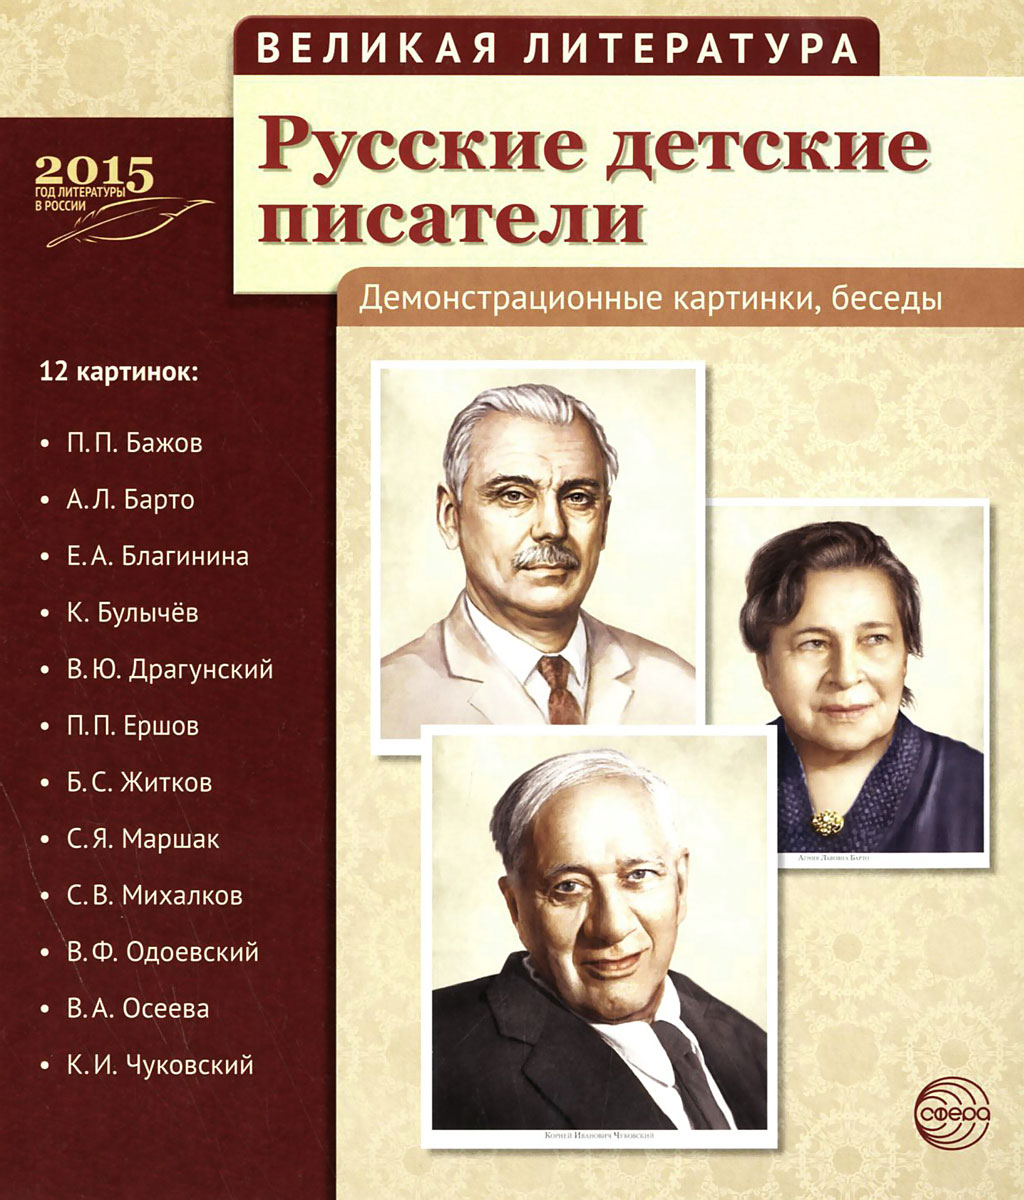 Русские детские писатели (набор из 12 демонстрационных картинок)